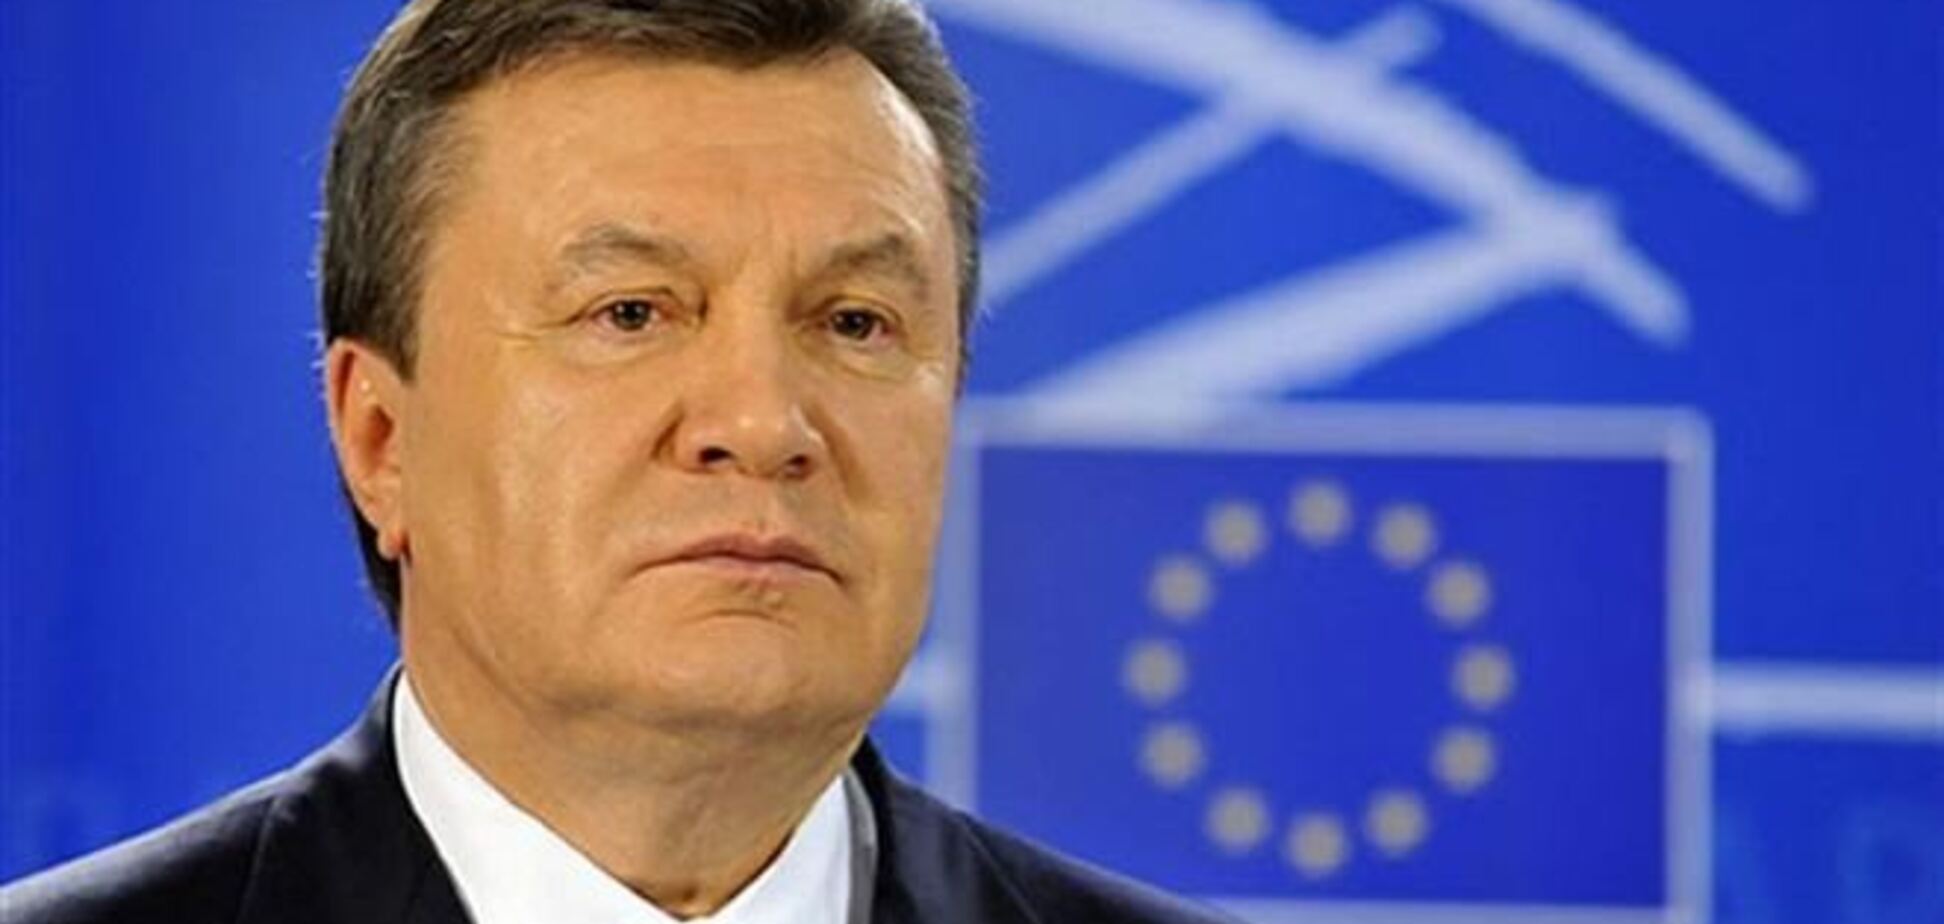 ЕС не понял заявление Януковича по ассоциации и ждет разъяснений